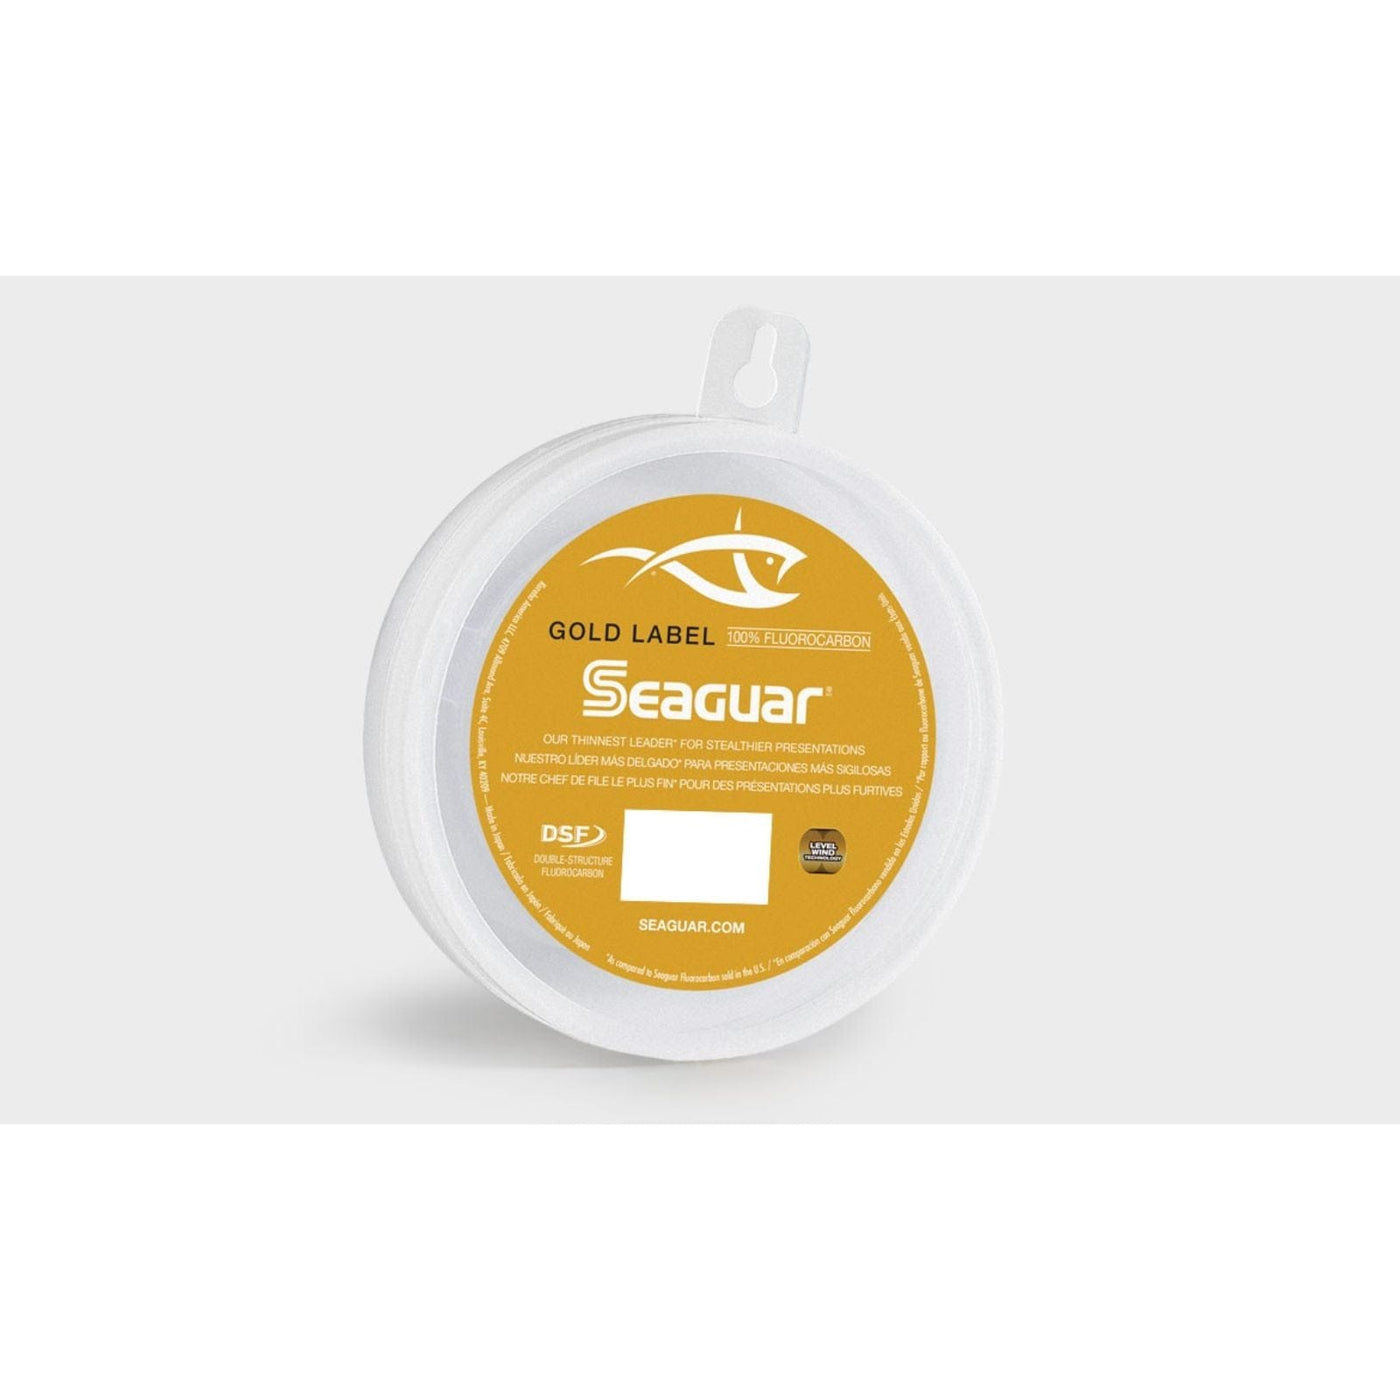 Seaguar Seaguar Gold Label 50GL25 Flourocarbon Leader 25 Yds Fishing